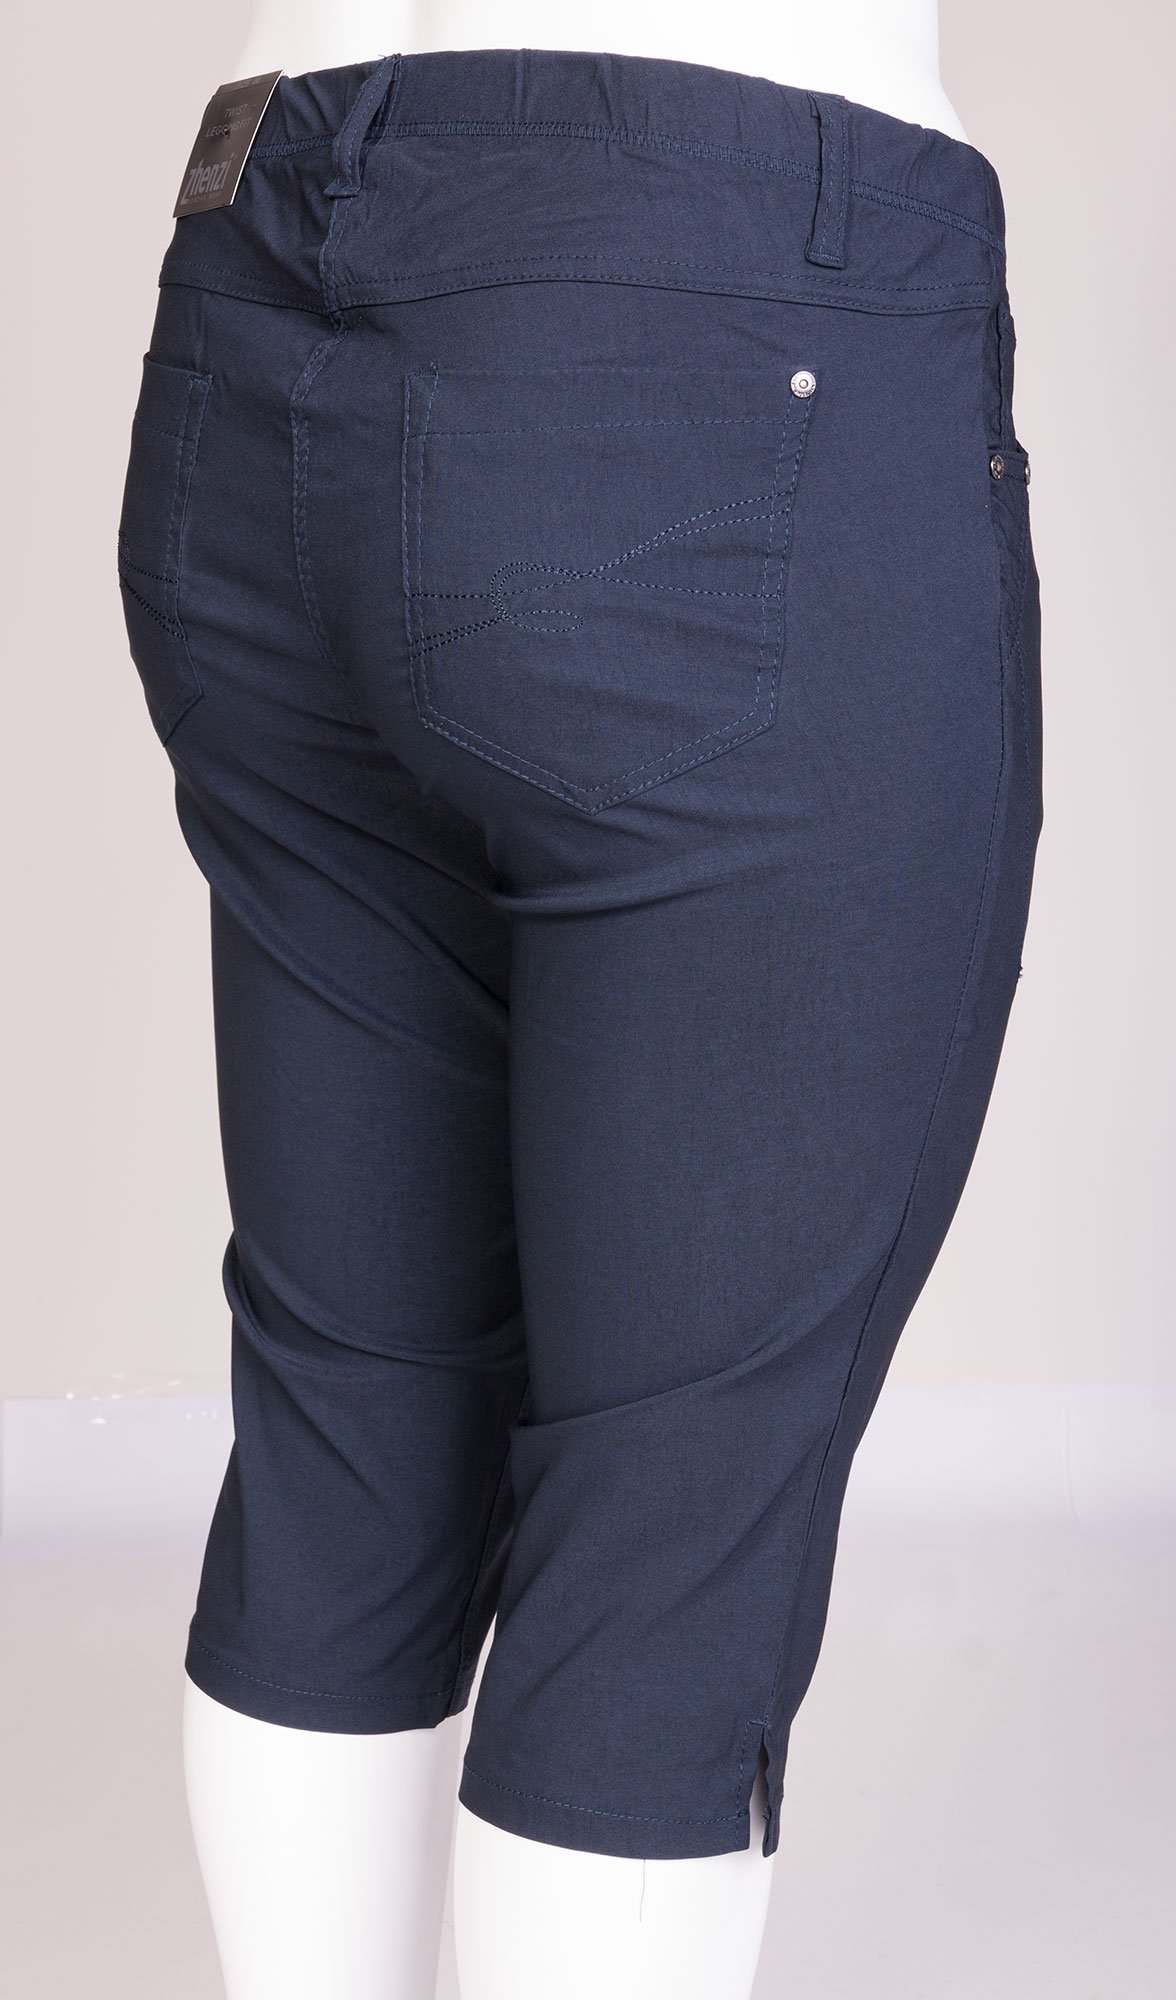 Marinbeblå twist capri bukser med smarte syninger fra Zhenzi